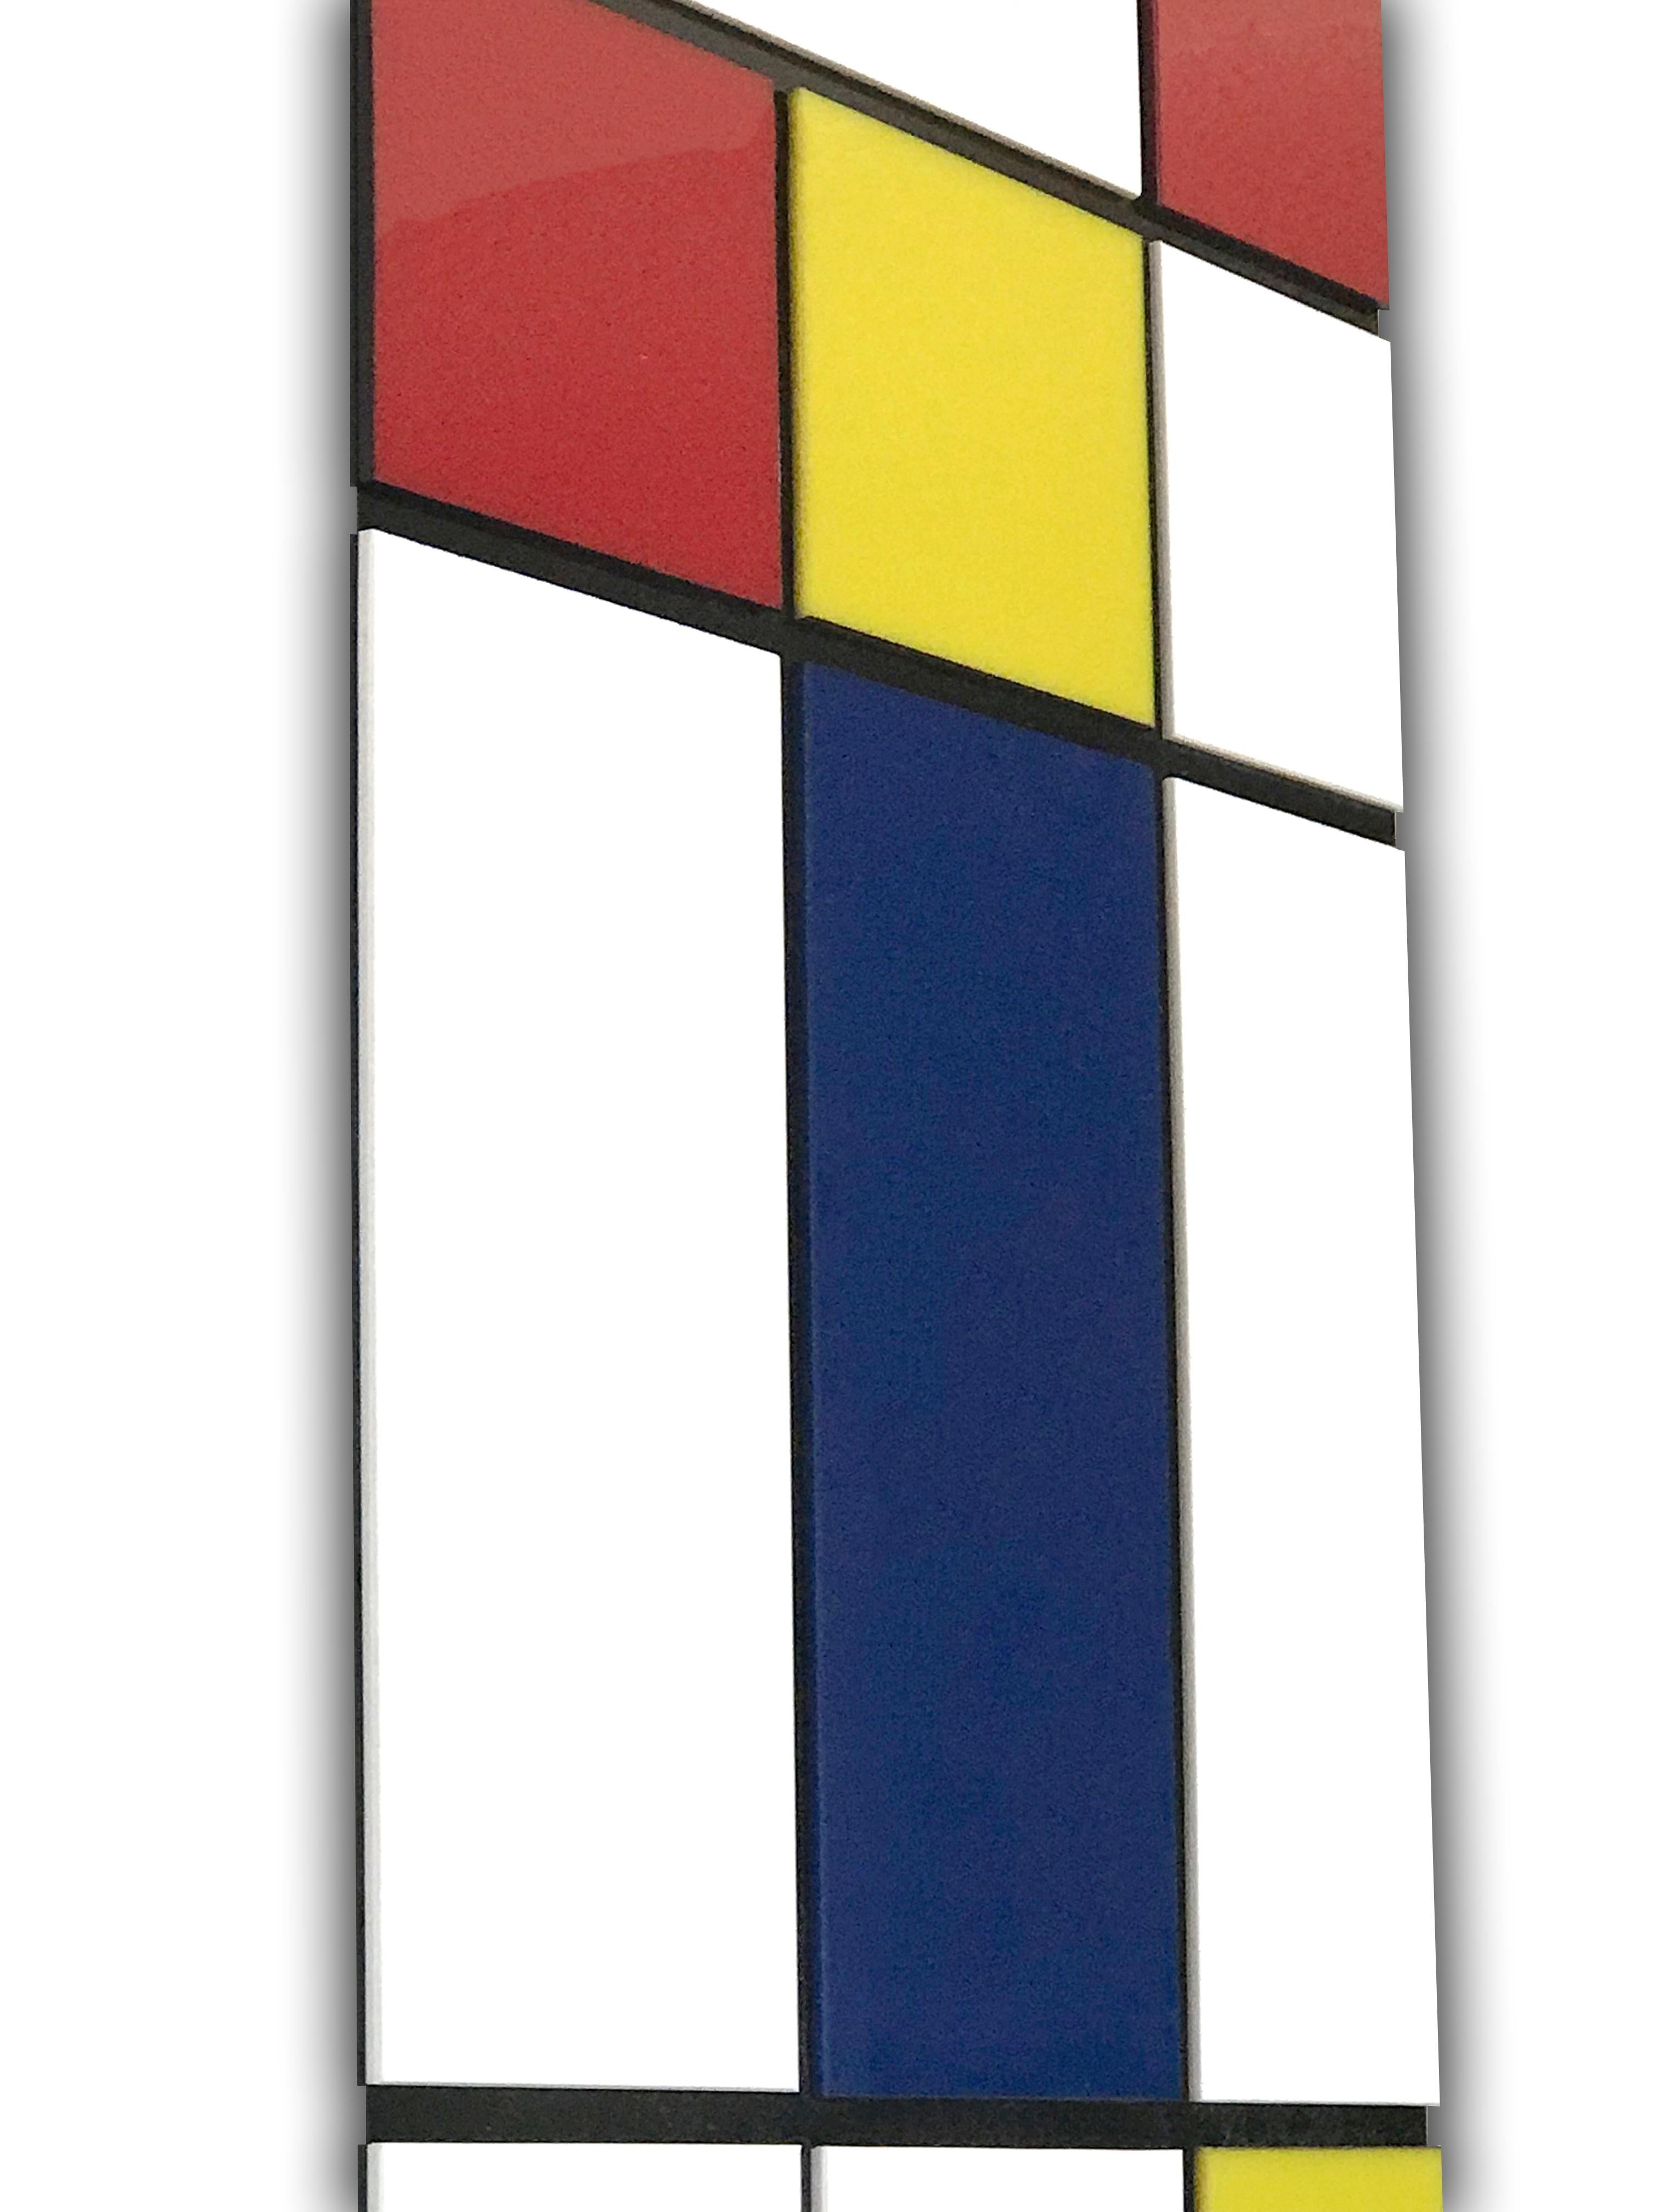 Piet Mondrian était et reste un pionnier de l'art abstrait. Cette sculpture murale en 3D est un hommage à ses contributions. Bien que son œuvre s'étende sur plusieurs styles, ce sont ses compositions utilisant des couleurs primaires et des lignes